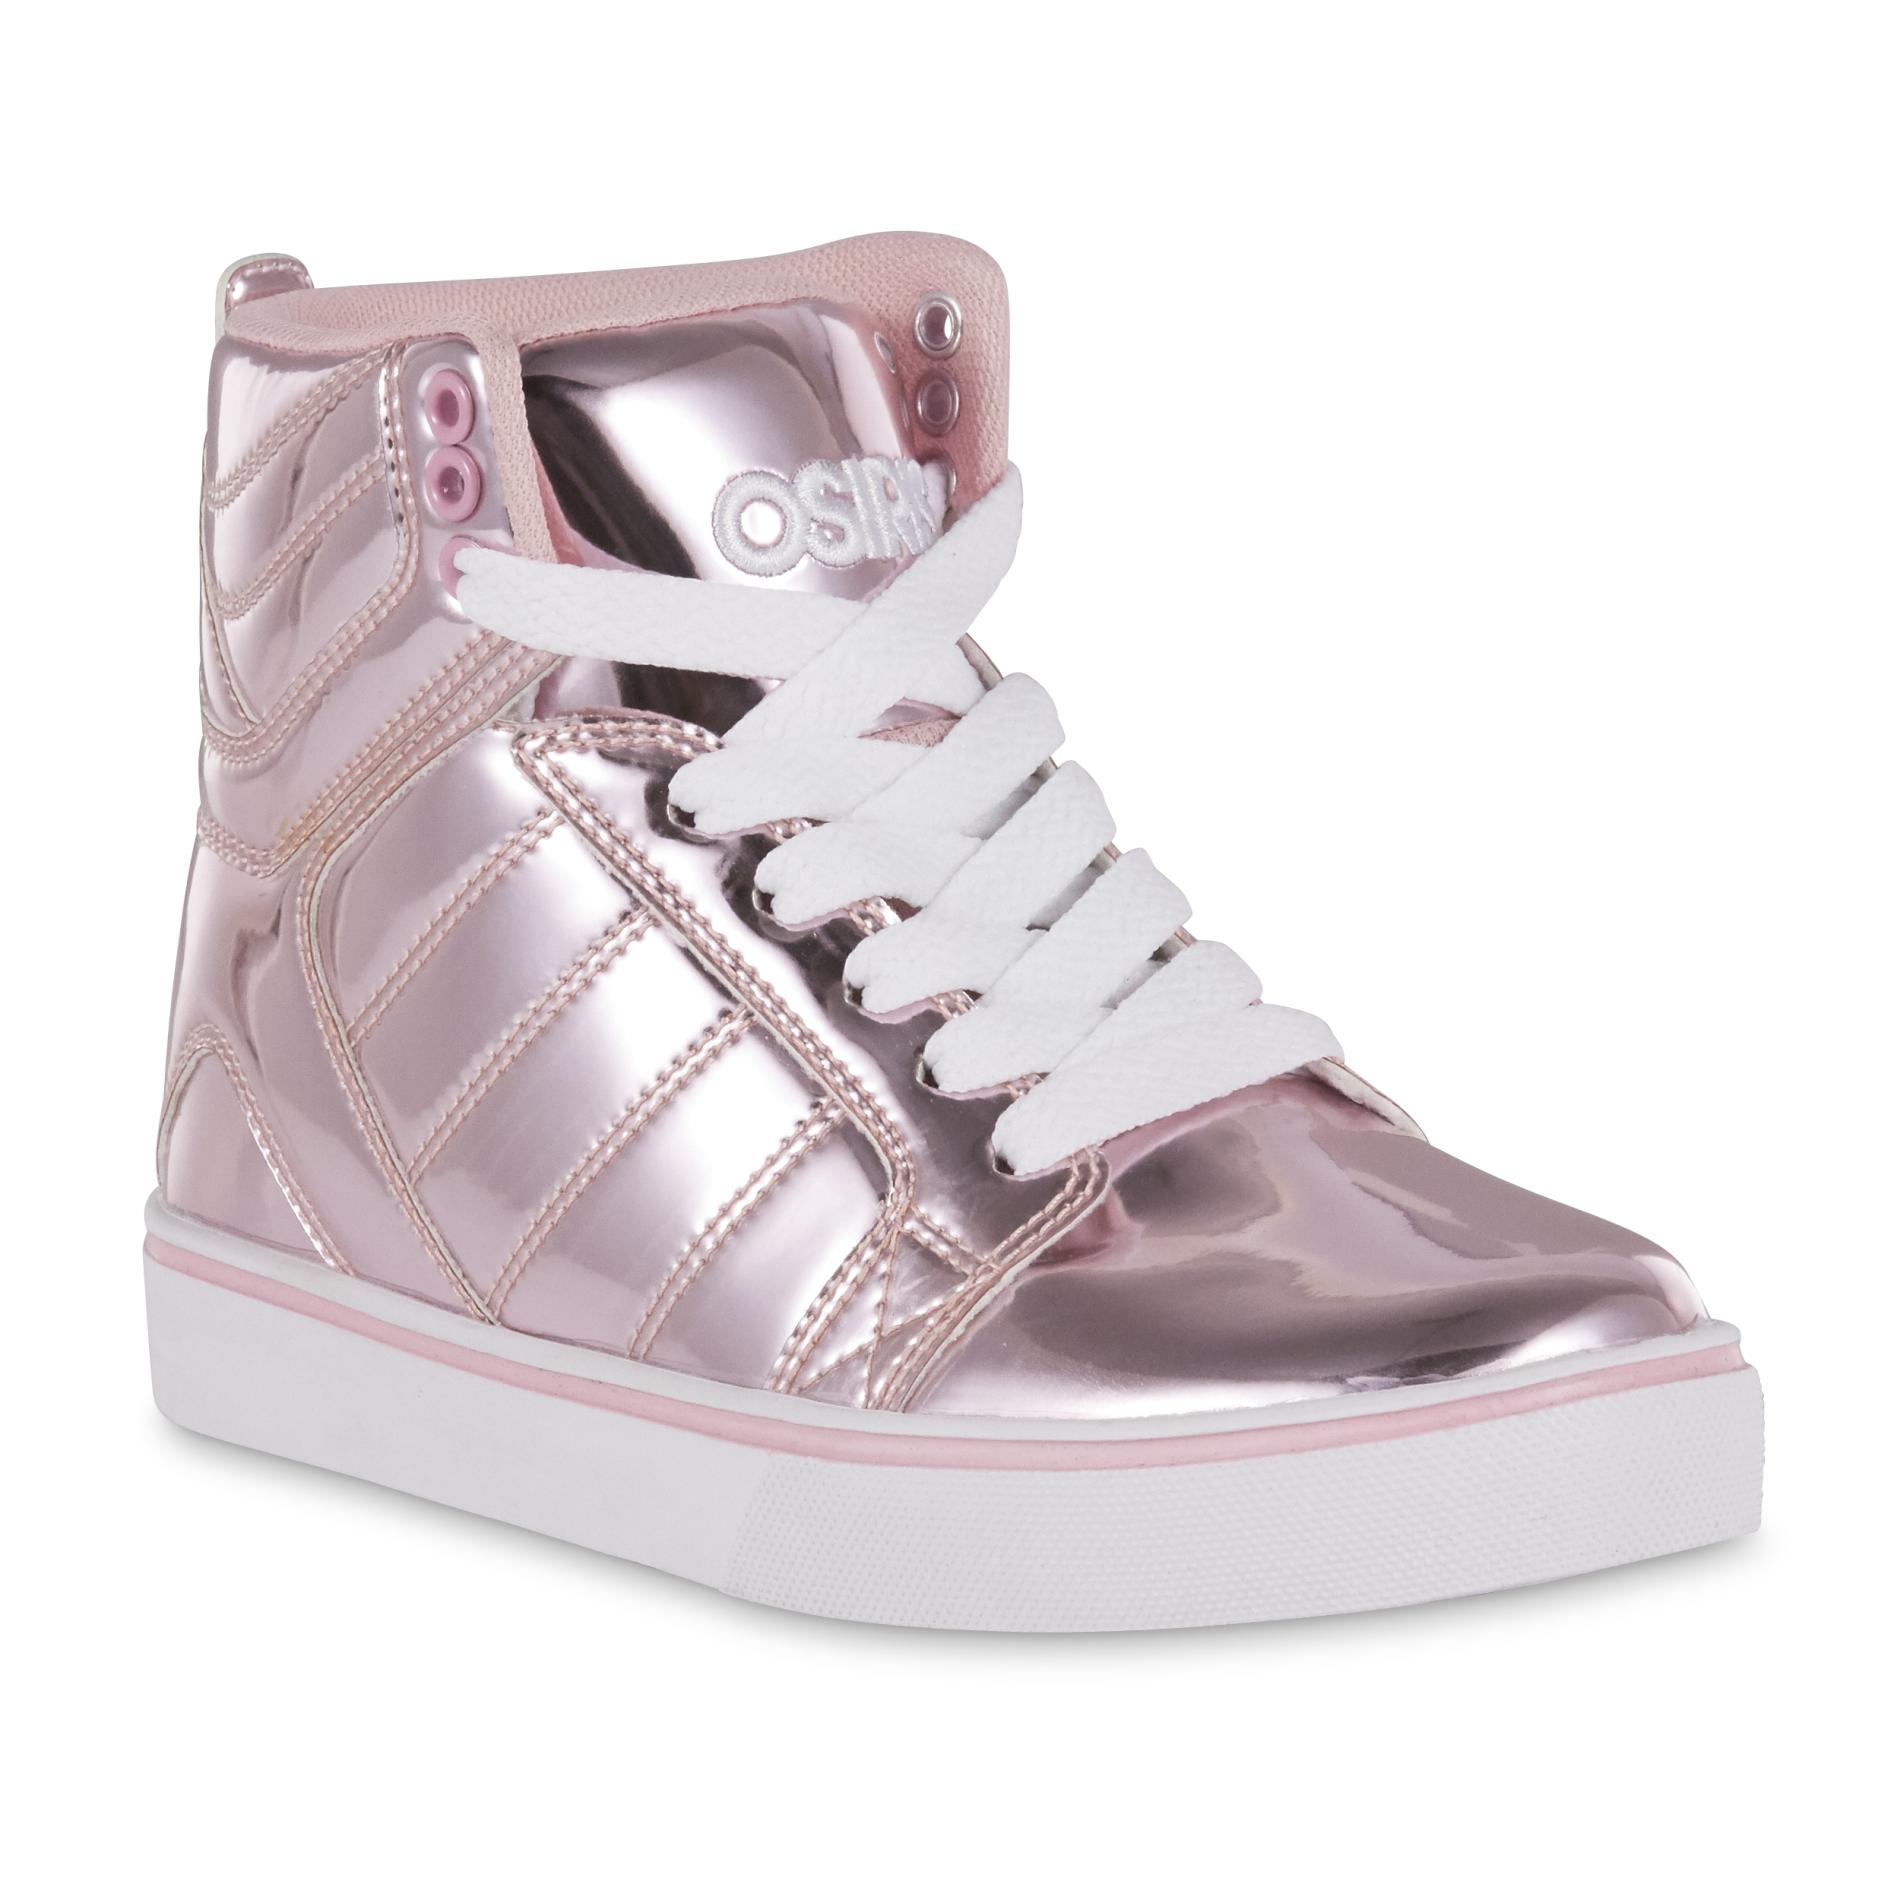 Osiris Girls' Skyrise High-Top Fashion Pink Sneaker